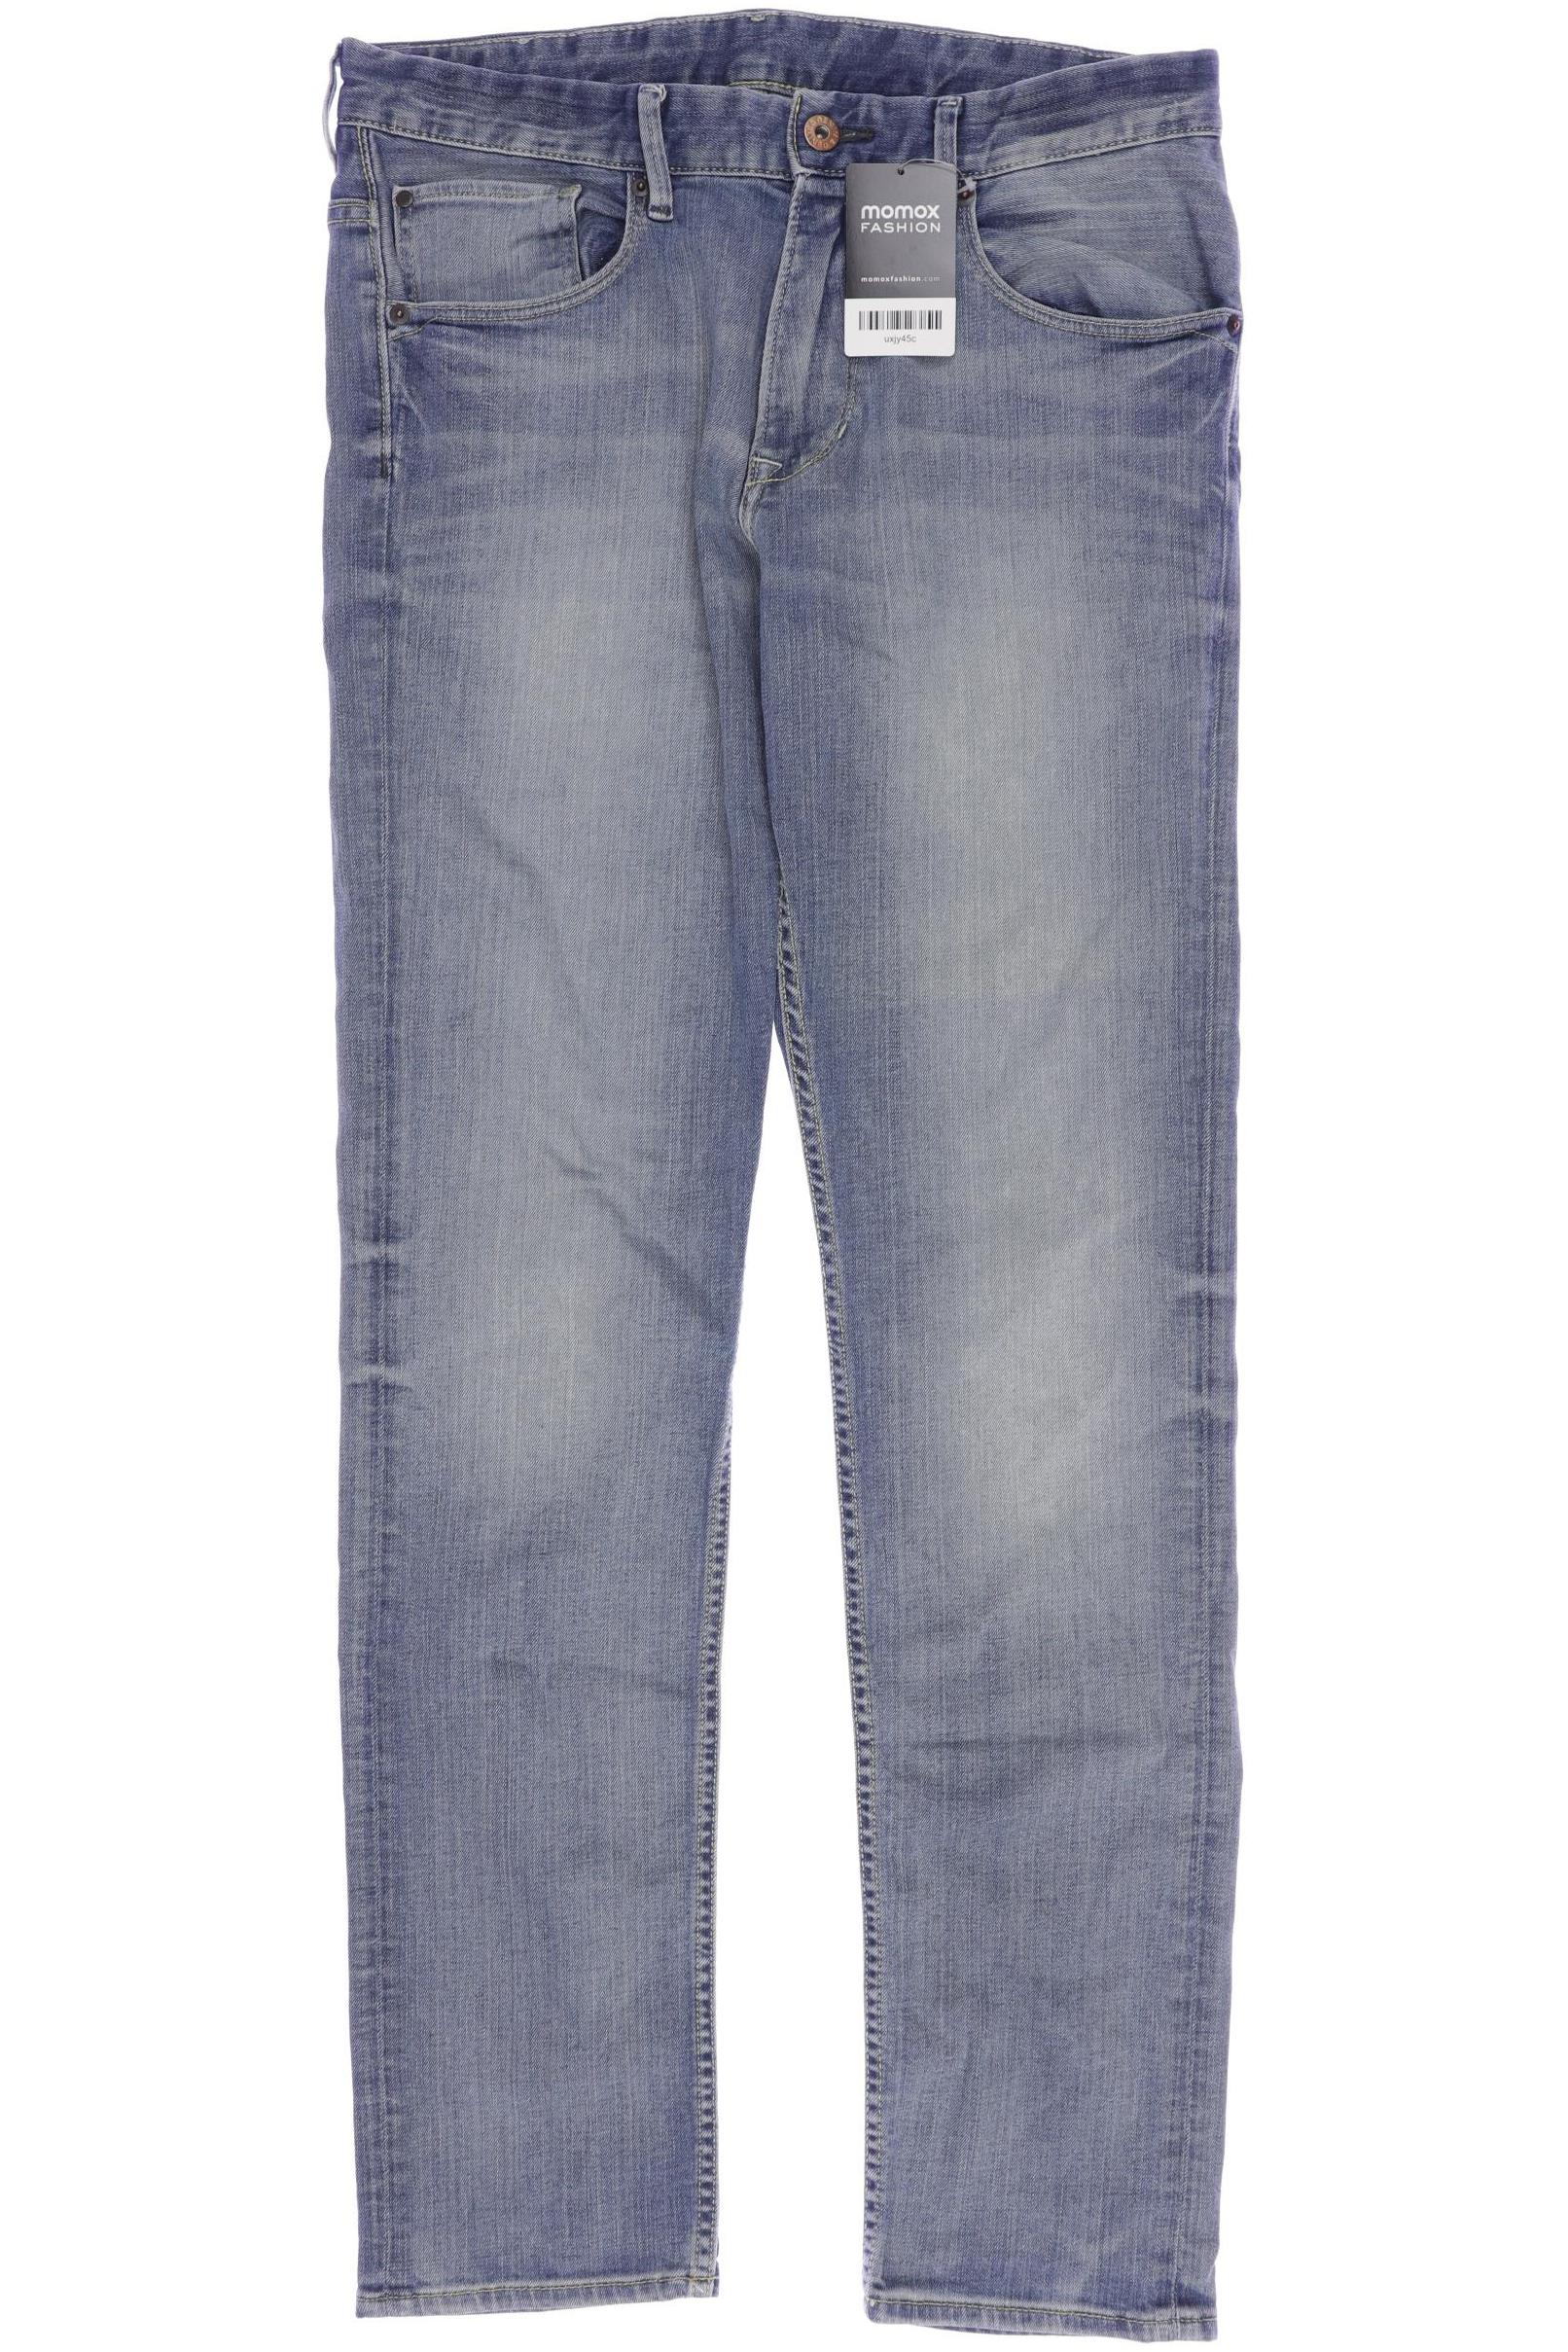 H&M Mädchen Jeans, marineblau von H&M